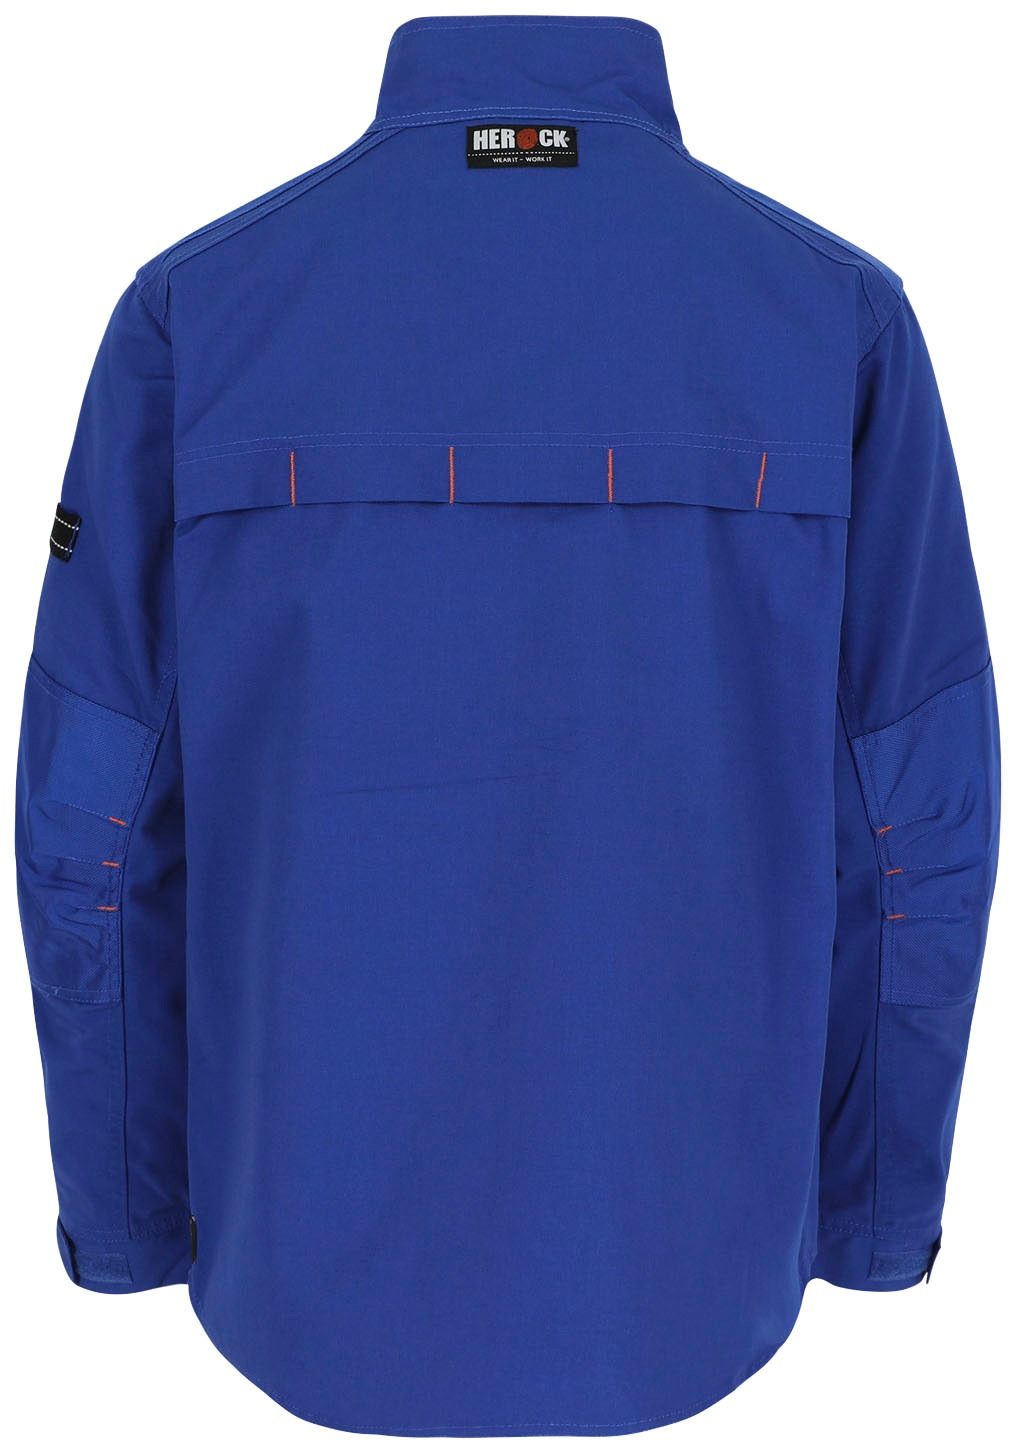 verstellbare 7 Arbeitsjacke - Jacke«, Wasserabweisend Bündchen Taschen kaufen - »Anzar robust online Herock -